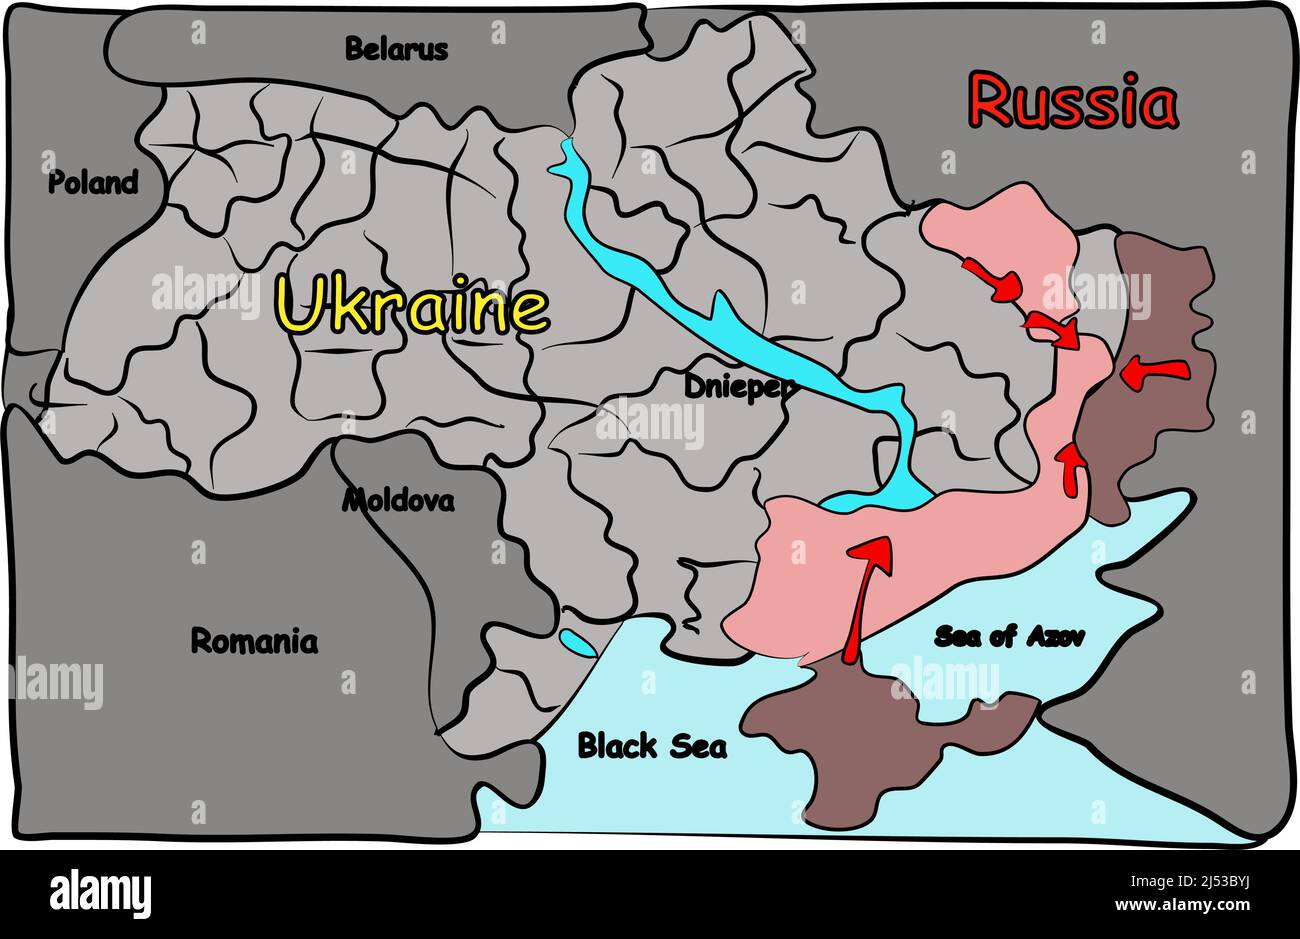 Mappa della guerra Ucraina. Russia e Ucraina conflitto militare 2022 nel sud-est. Illustrazione vettoriale Illustrazione Vettoriale